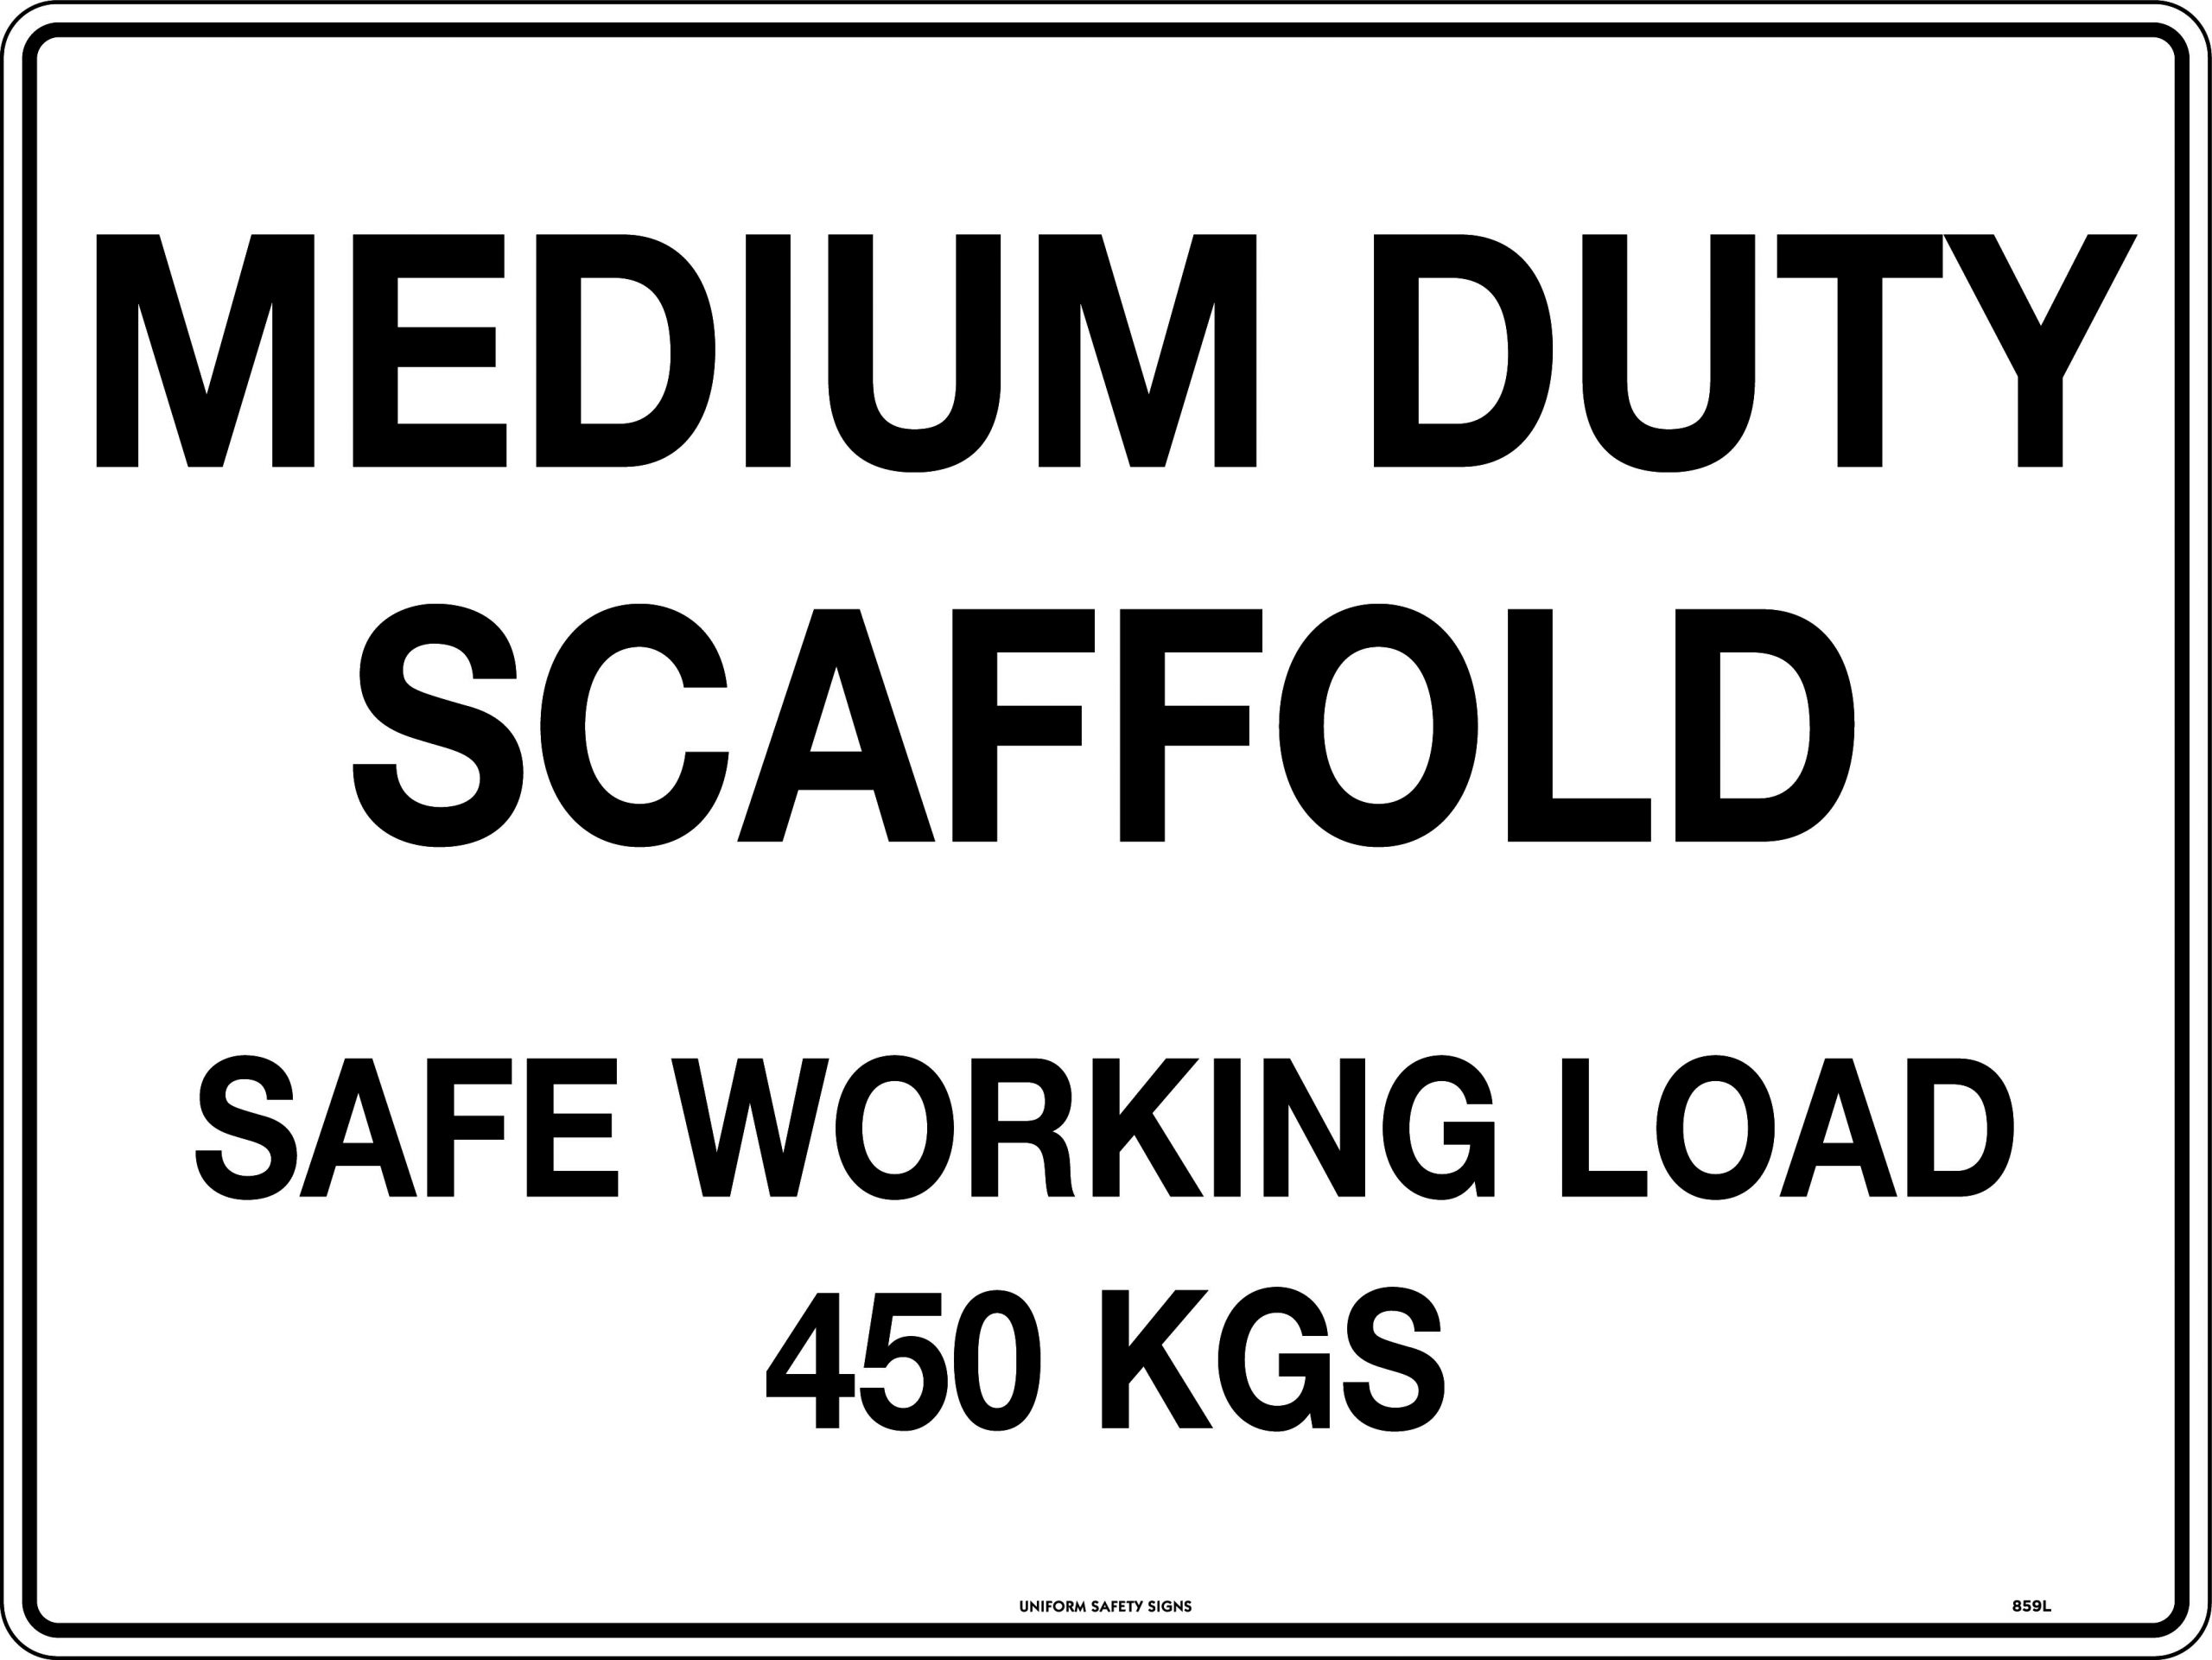 UNIFORM SAFETY 600X450MM POLY MEDIUM DUTY SCAFFOLD SAFE WORKING LOAD 4